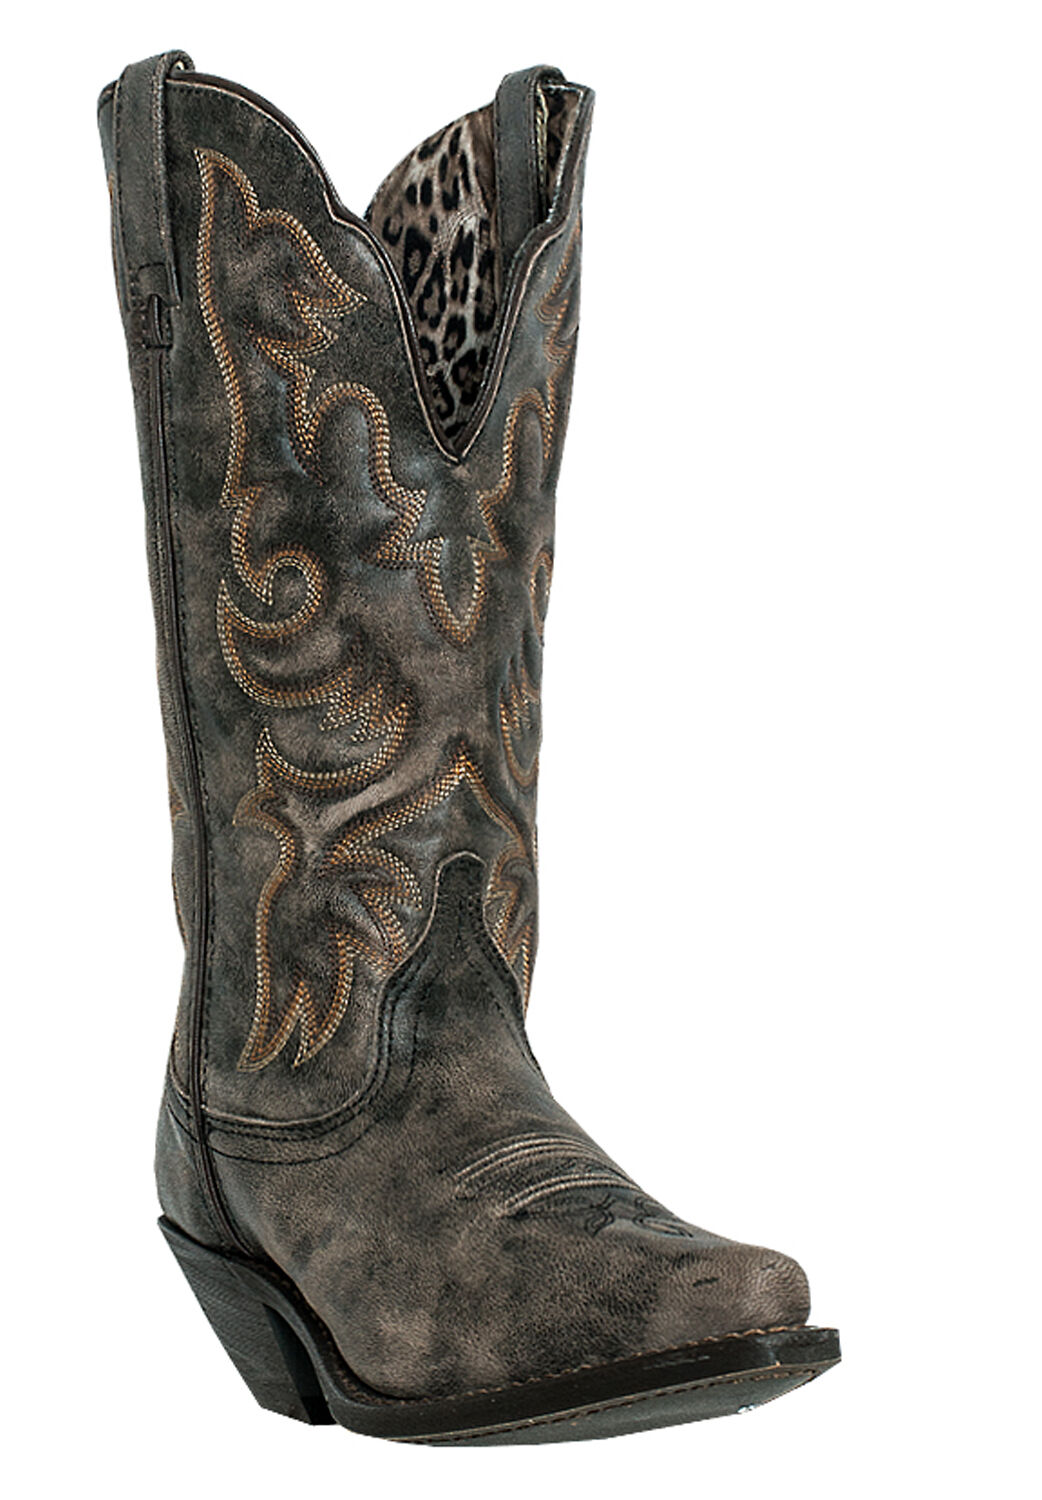 Wide Width Women's Access Cowboy Boot by Laredo in Black Tan (Size 7 1/2 W)